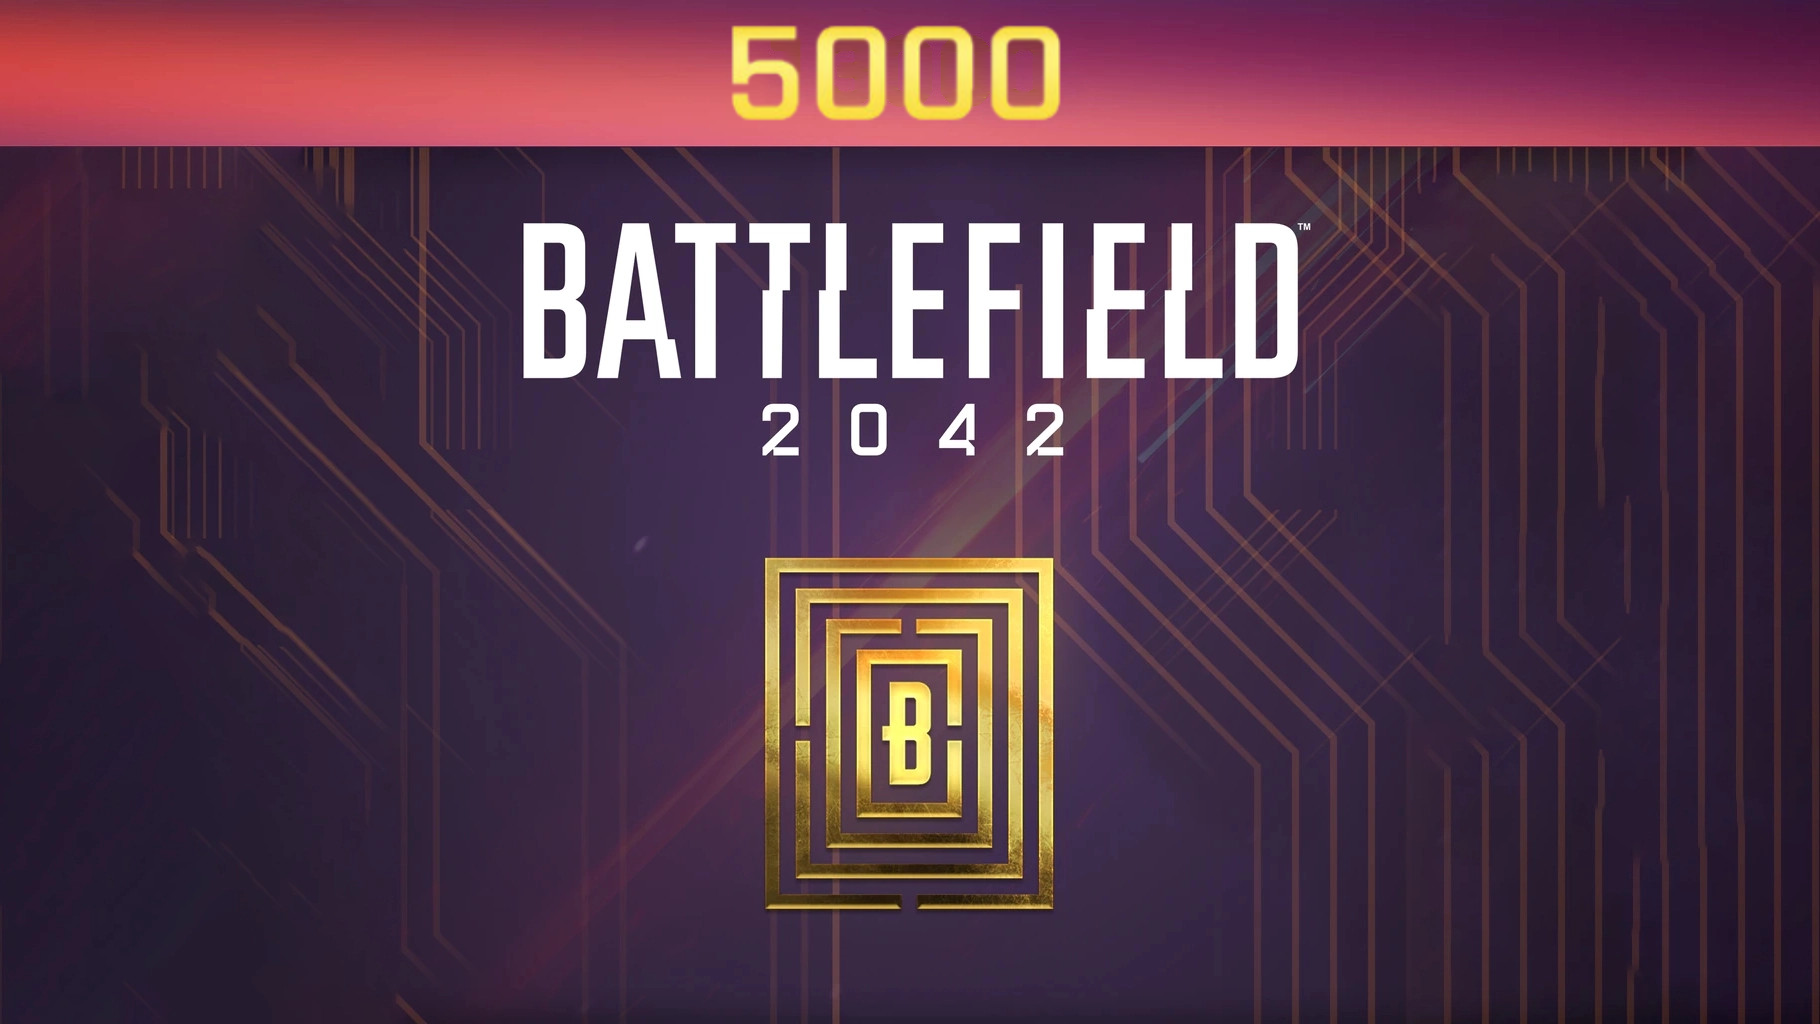 Battlefield 2042 - 5000 BFC Balance XBOX One / Xbox Series X|S CD Key 40.67$